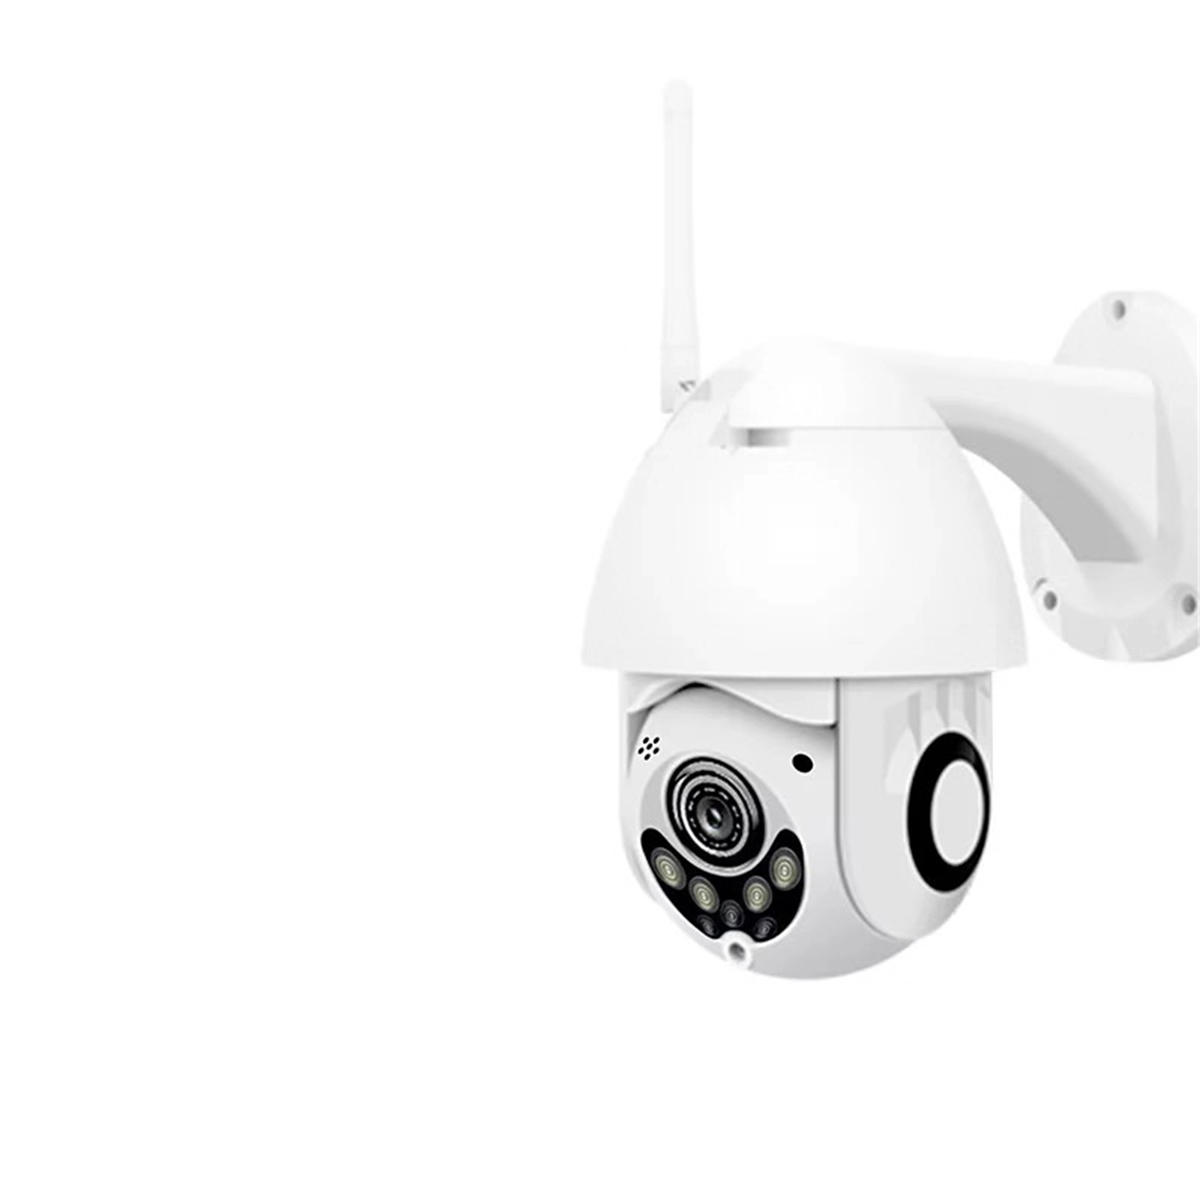 1080P 2MP беспроводной водонепроницаемый WIFI IP камеры безопасности Интерком видеонаблюдения ночного видения ONVIF протокол AP Hotspot - США Plug